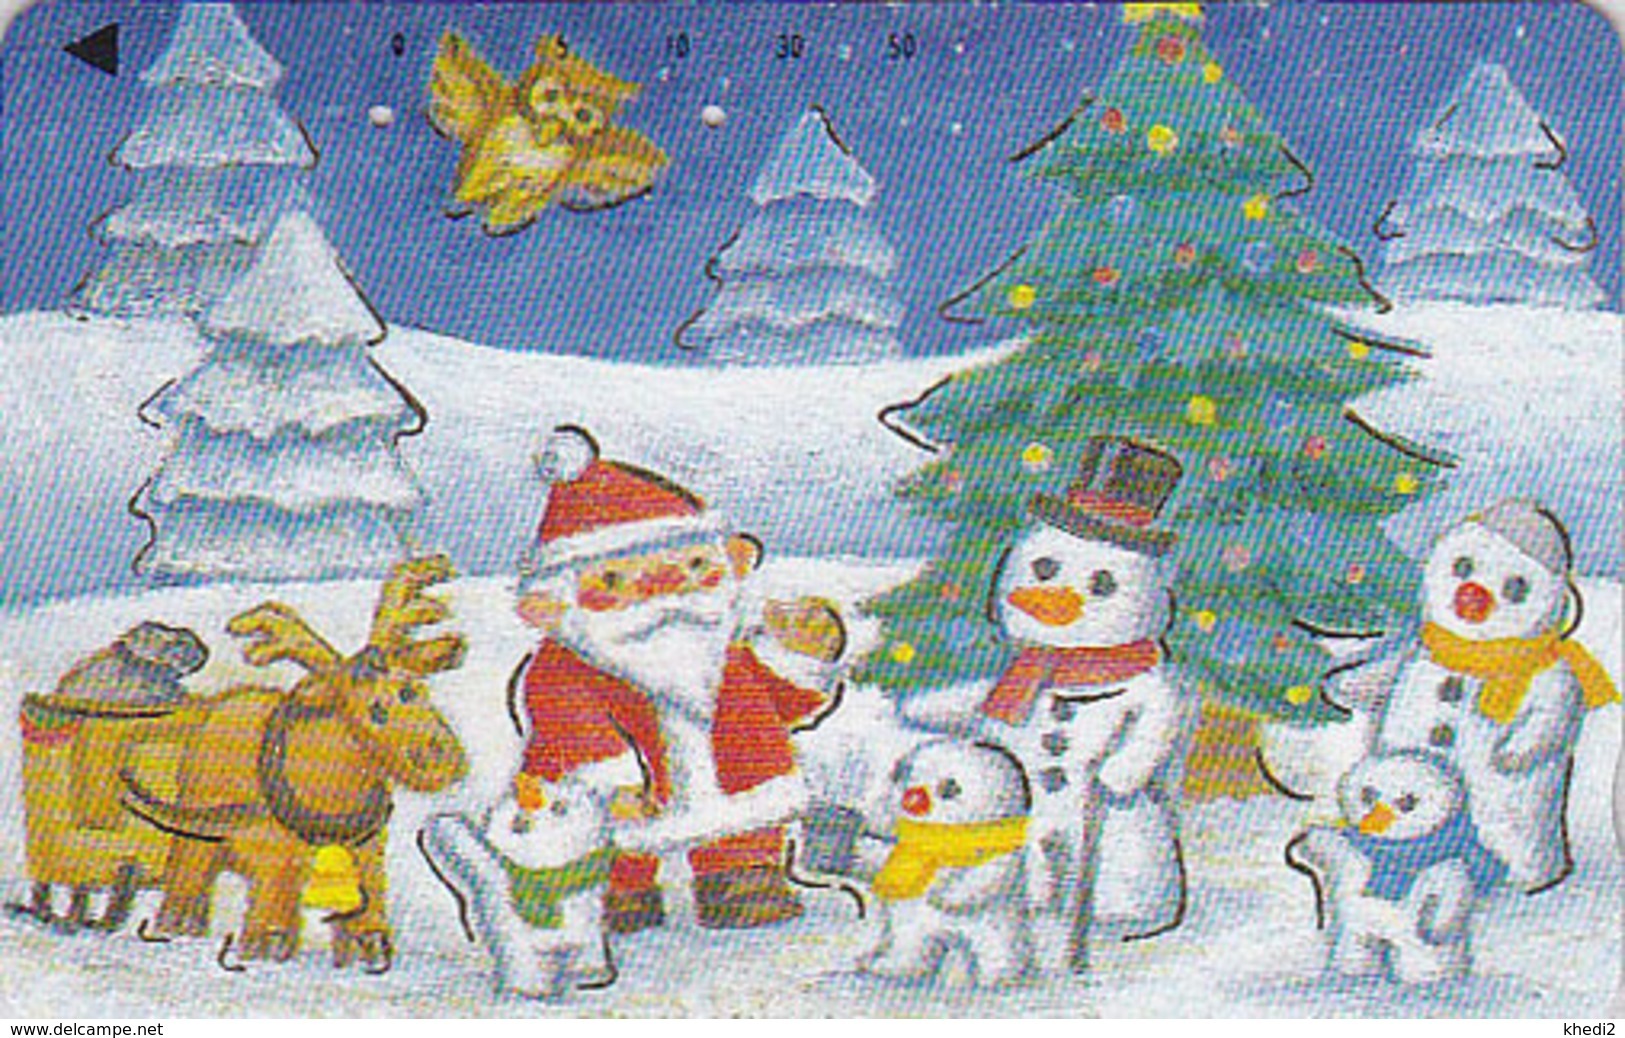 Télécarte Dorée Japon / 110-011  - HIBOU NOEL Bonhomme De Neige - OWL Bird CHRISTMAS Santa Japan Gold Phonecard - 2068 - Gufi E Civette